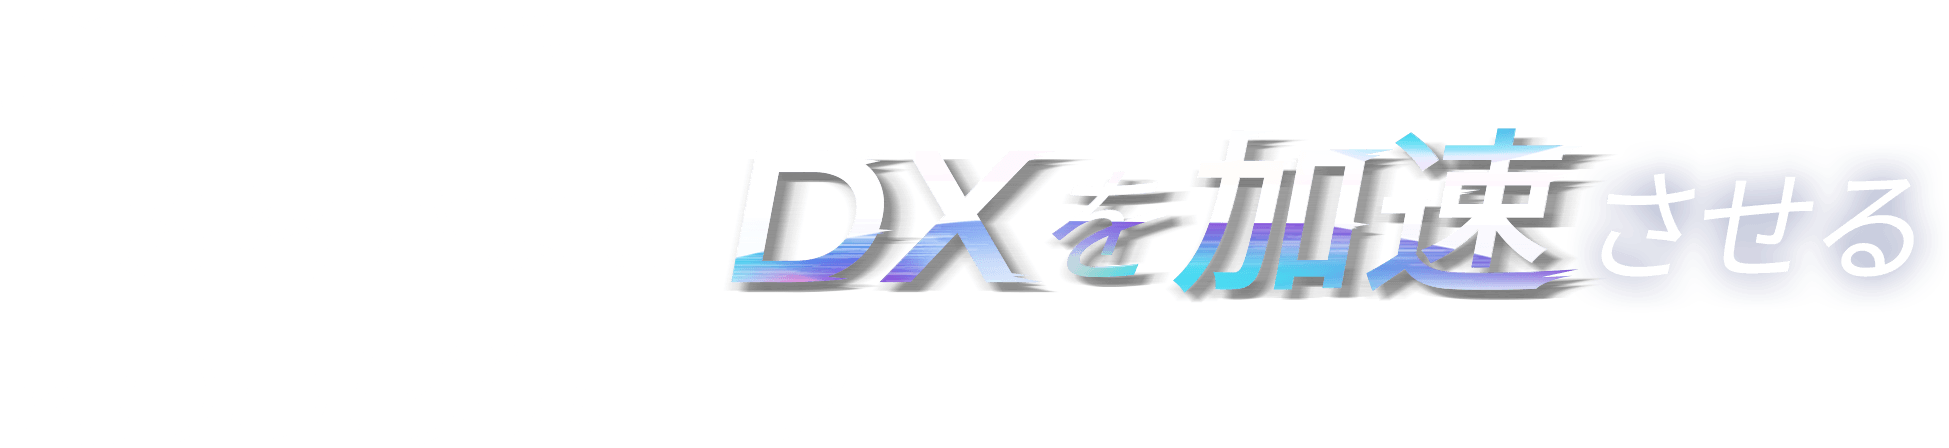 通信+αでお客さまのDXを加速させる KDDIグループ